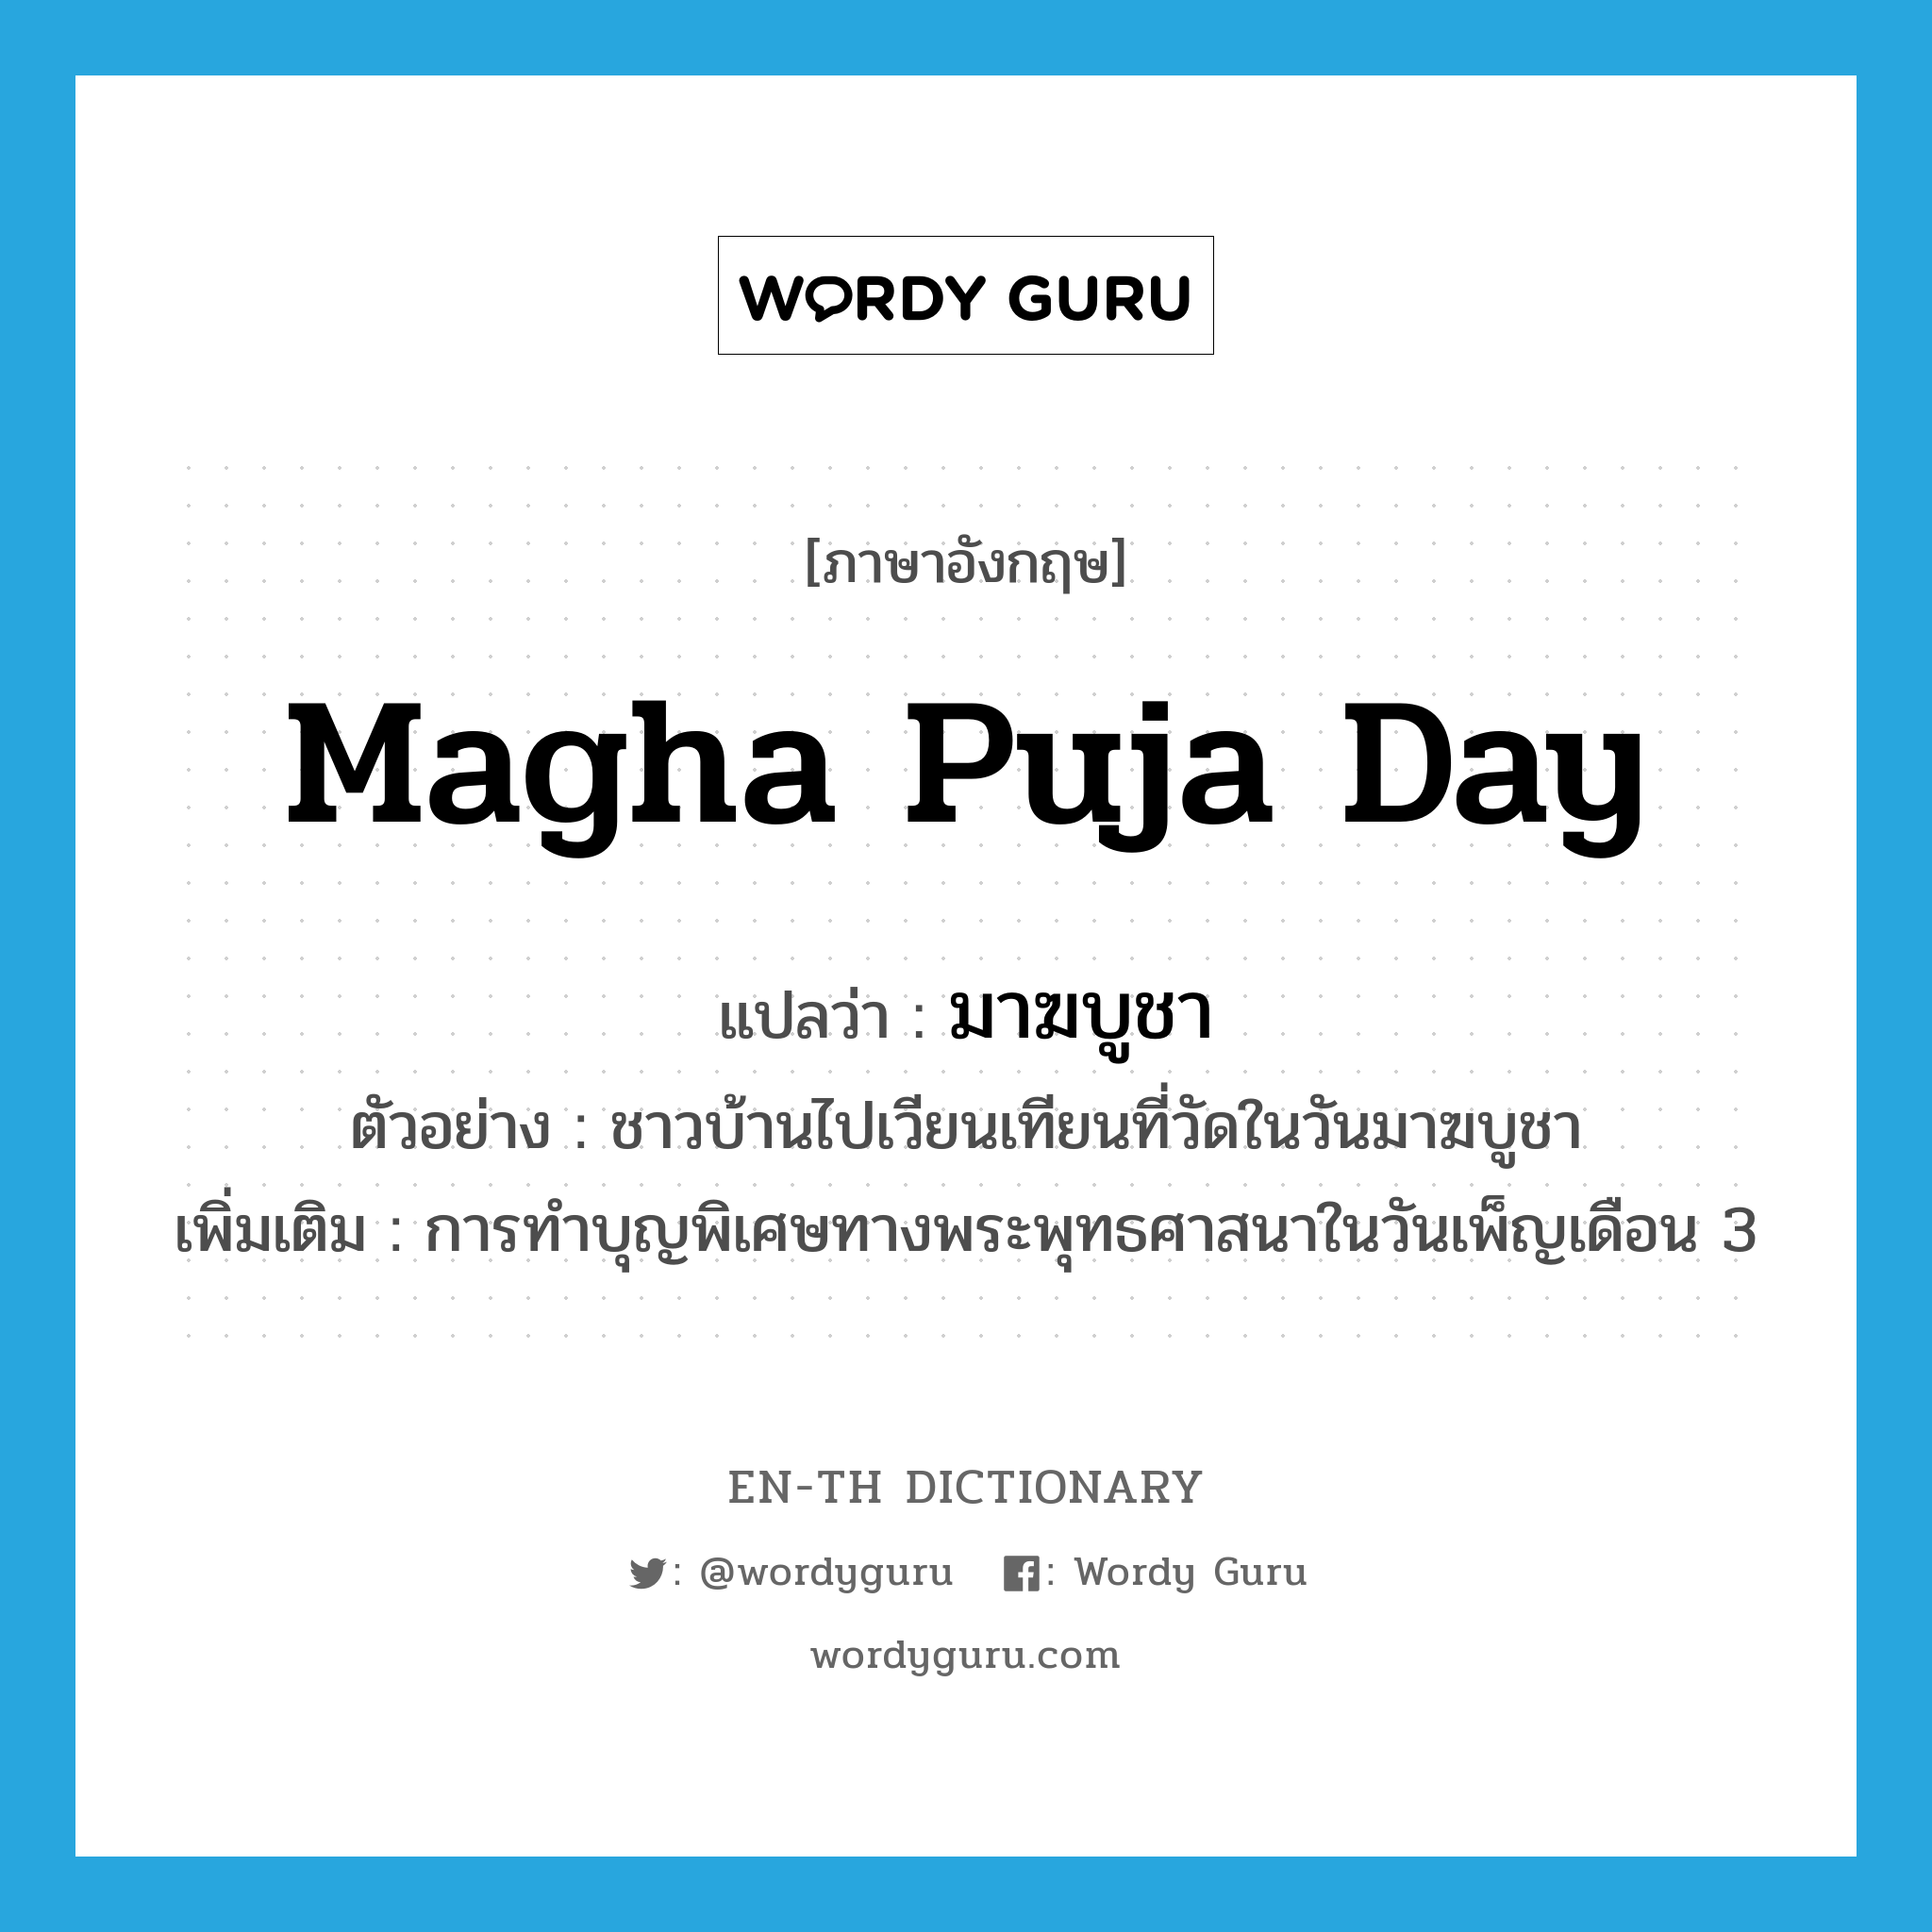 มาฆบูชา ภาษาอังกฤษ?, คำศัพท์ภาษาอังกฤษ มาฆบูชา แปลว่า Magha Puja Day ประเภท N ตัวอย่าง ชาวบ้านไปเวียนเทียนที่วัดในวันมาฆบูชา เพิ่มเติม การทำบุญพิเศษทางพระพุทธศาสนาในวันเพ็ญเดือน 3 หมวด N